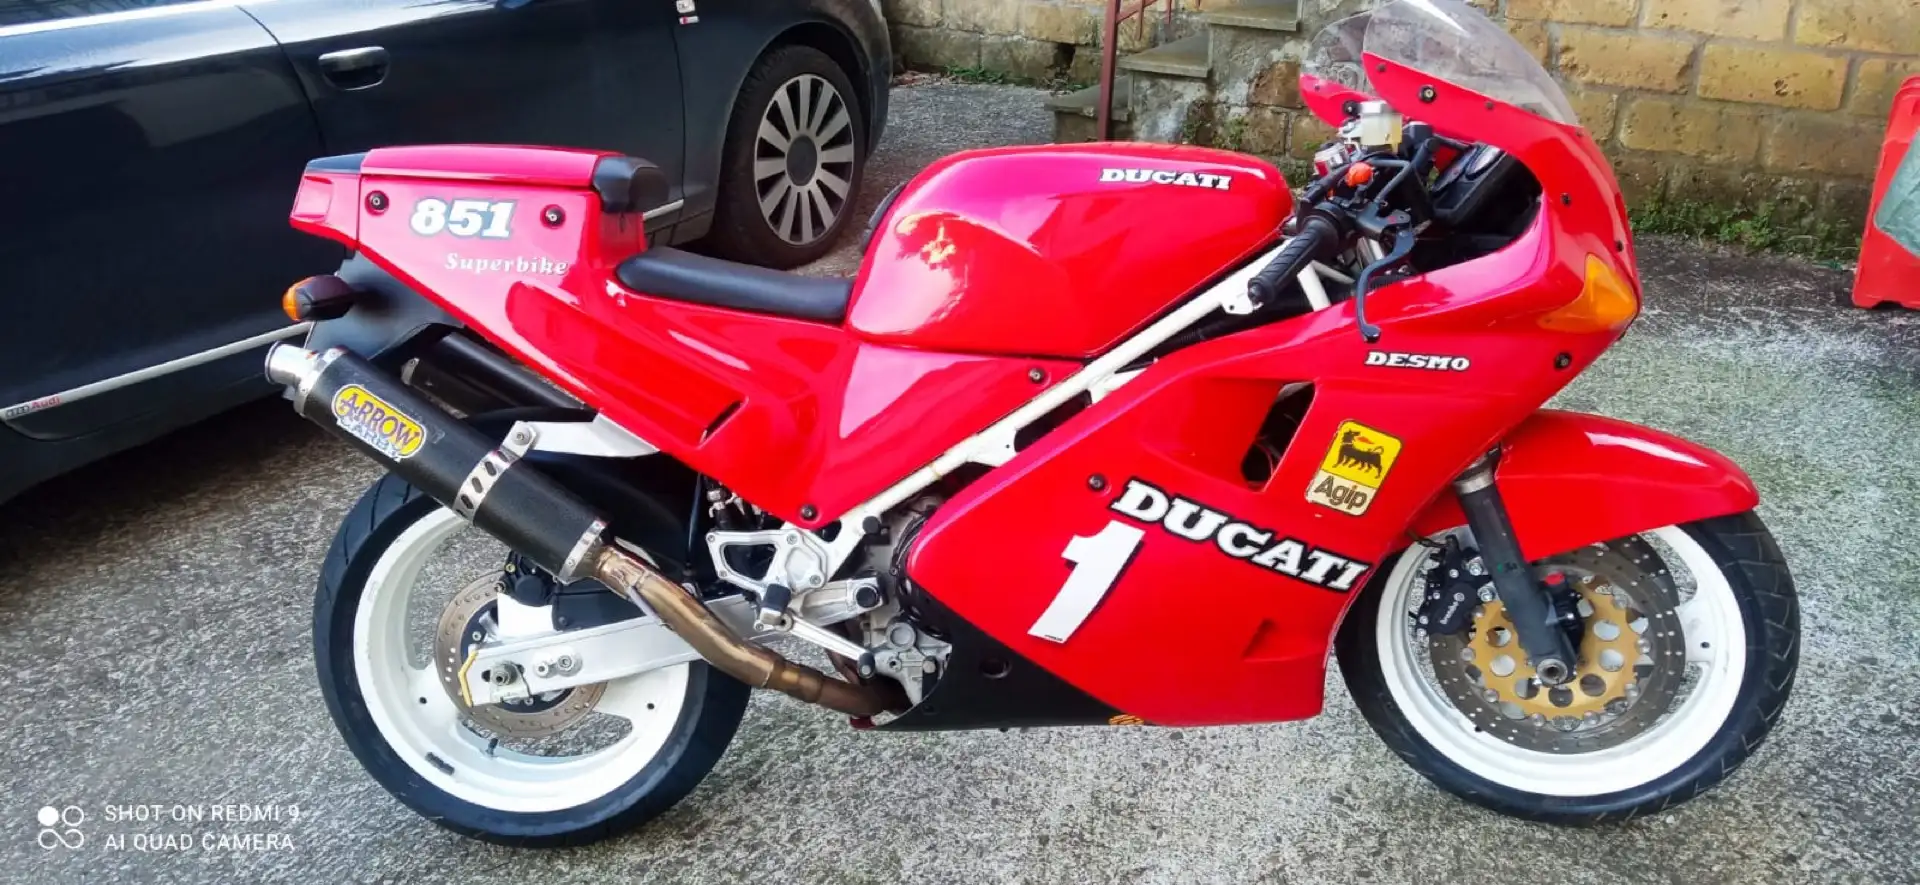 Ducati 851 superbike Rood - 2